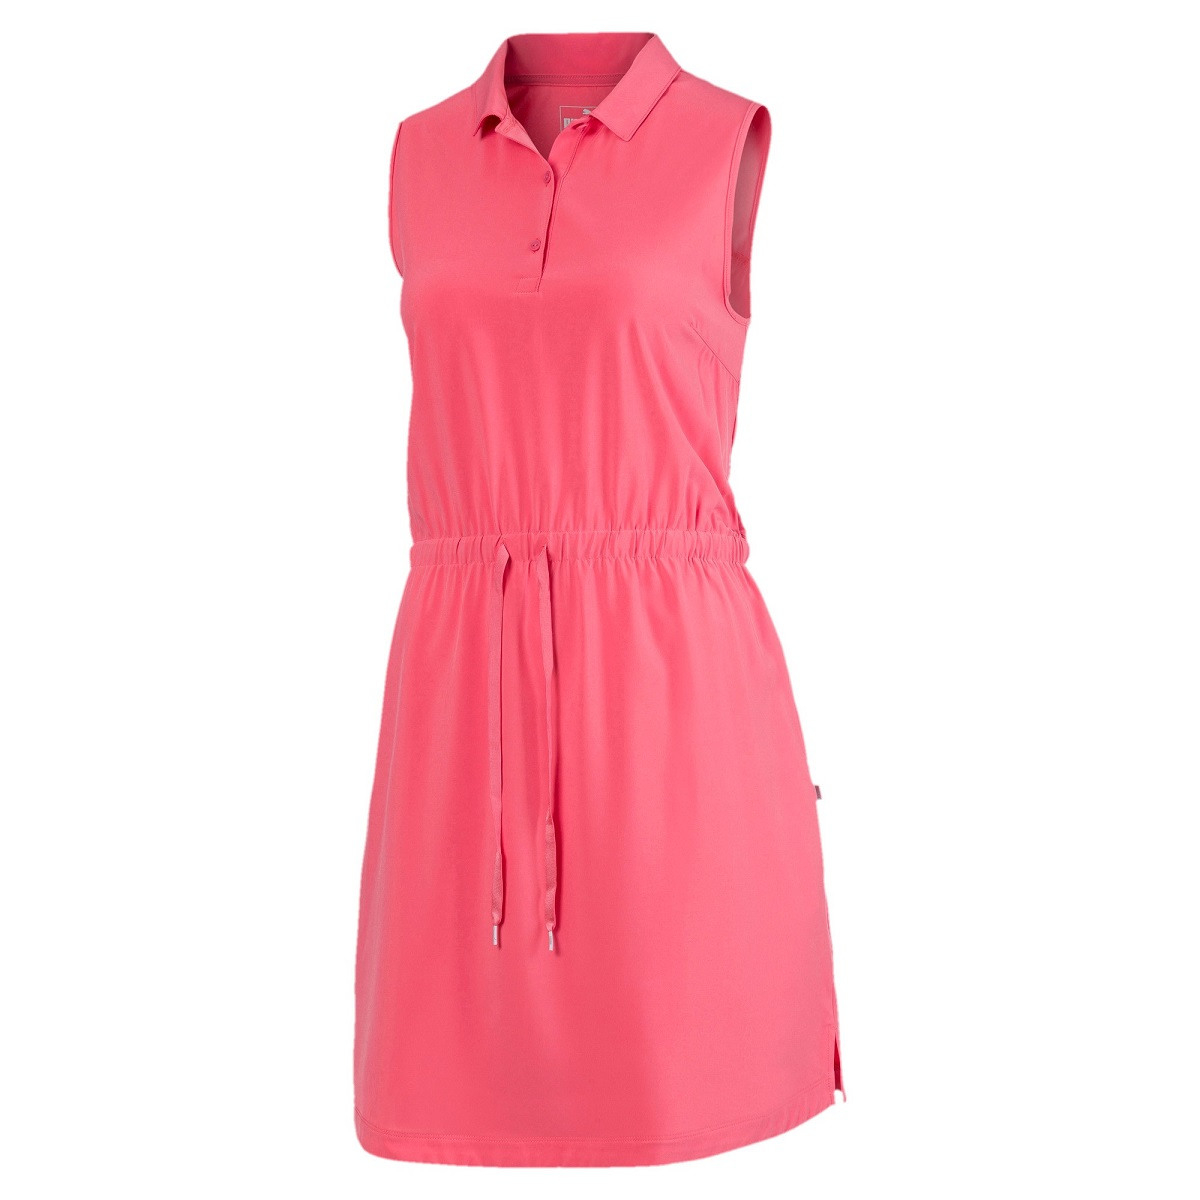 Puma Sleeveless Kleid Damen Rosa Bei Golfshopde Bestellen